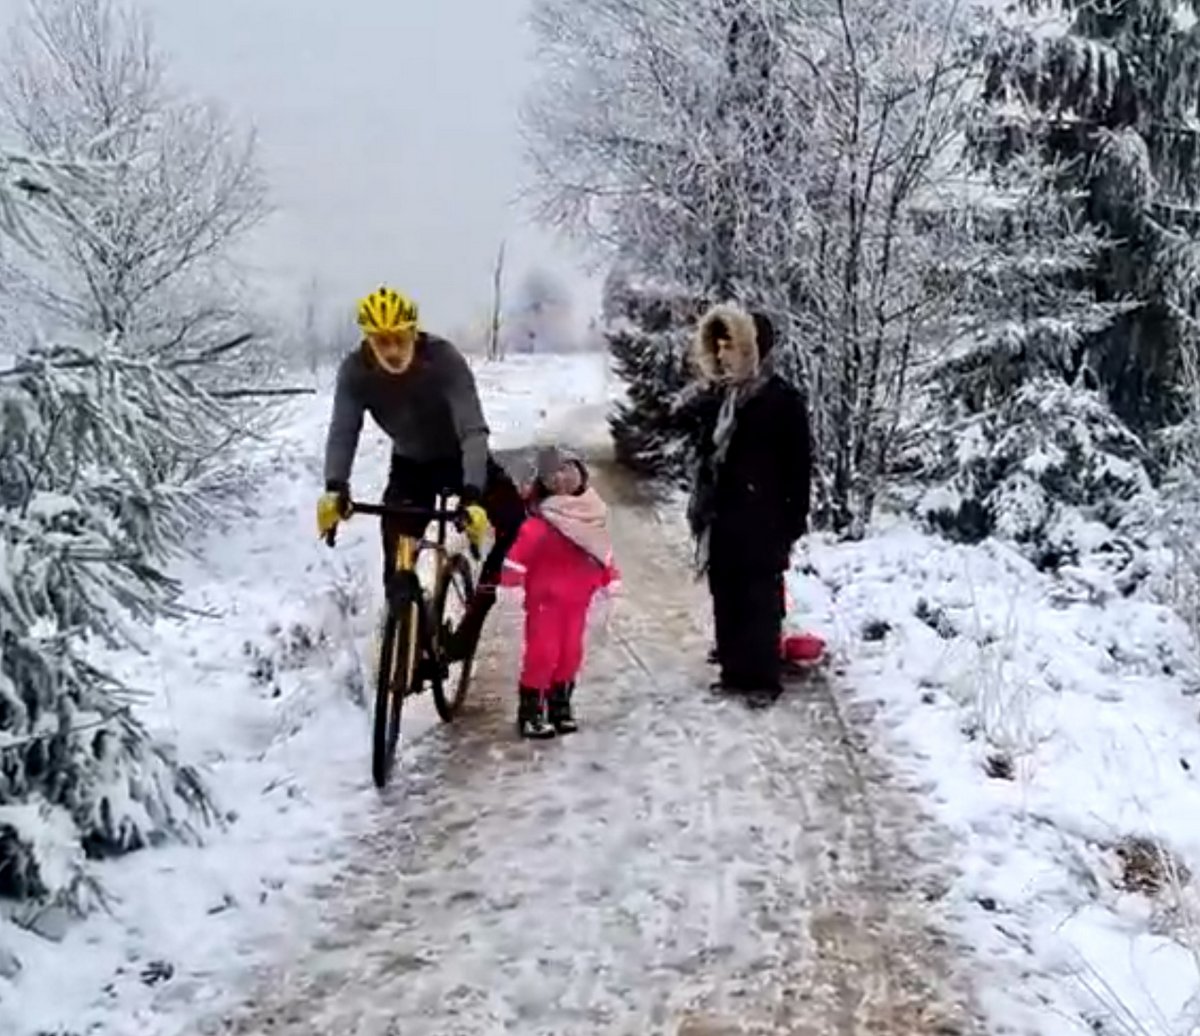 Le cycliste impatient qui a « volontairement » renversé une petite fille sur le chemin refuse de s’excuser